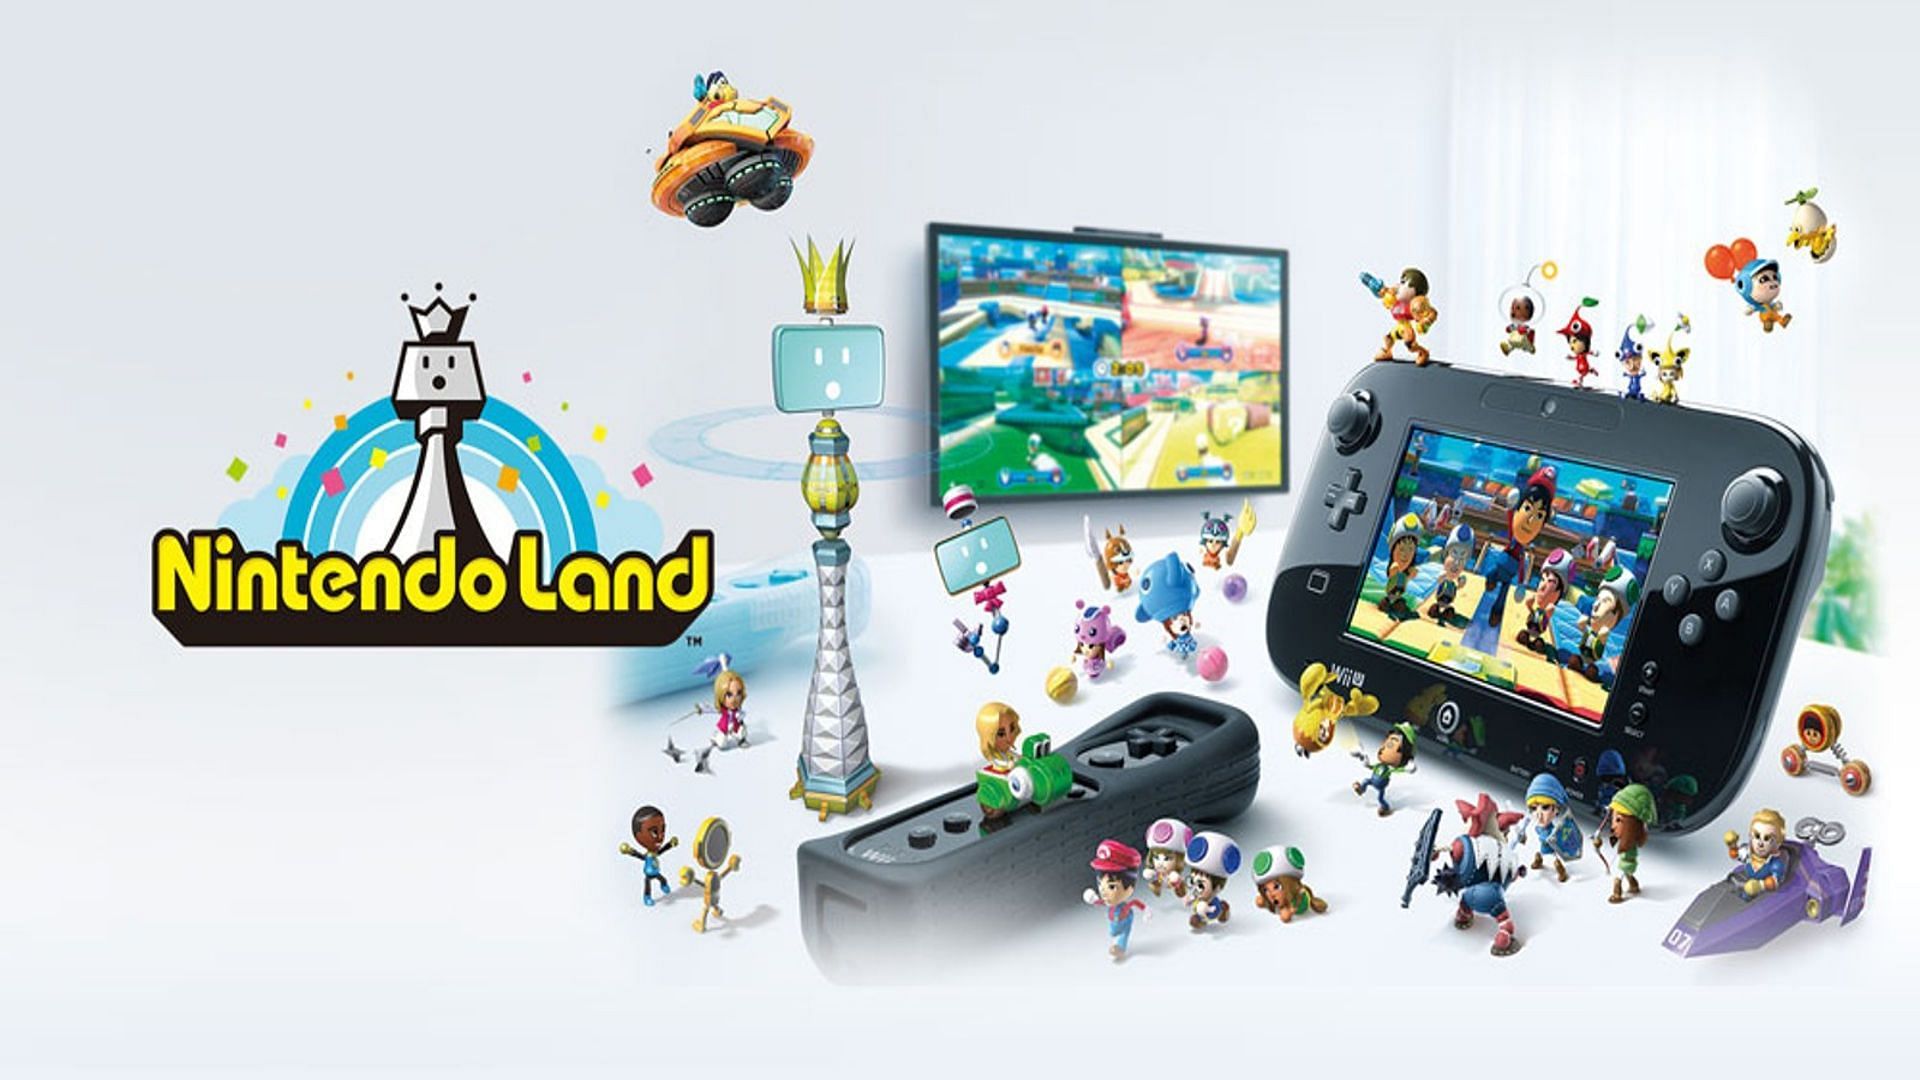 Nintendo Land was the original Super Nintendo World (Image via Nintendo)